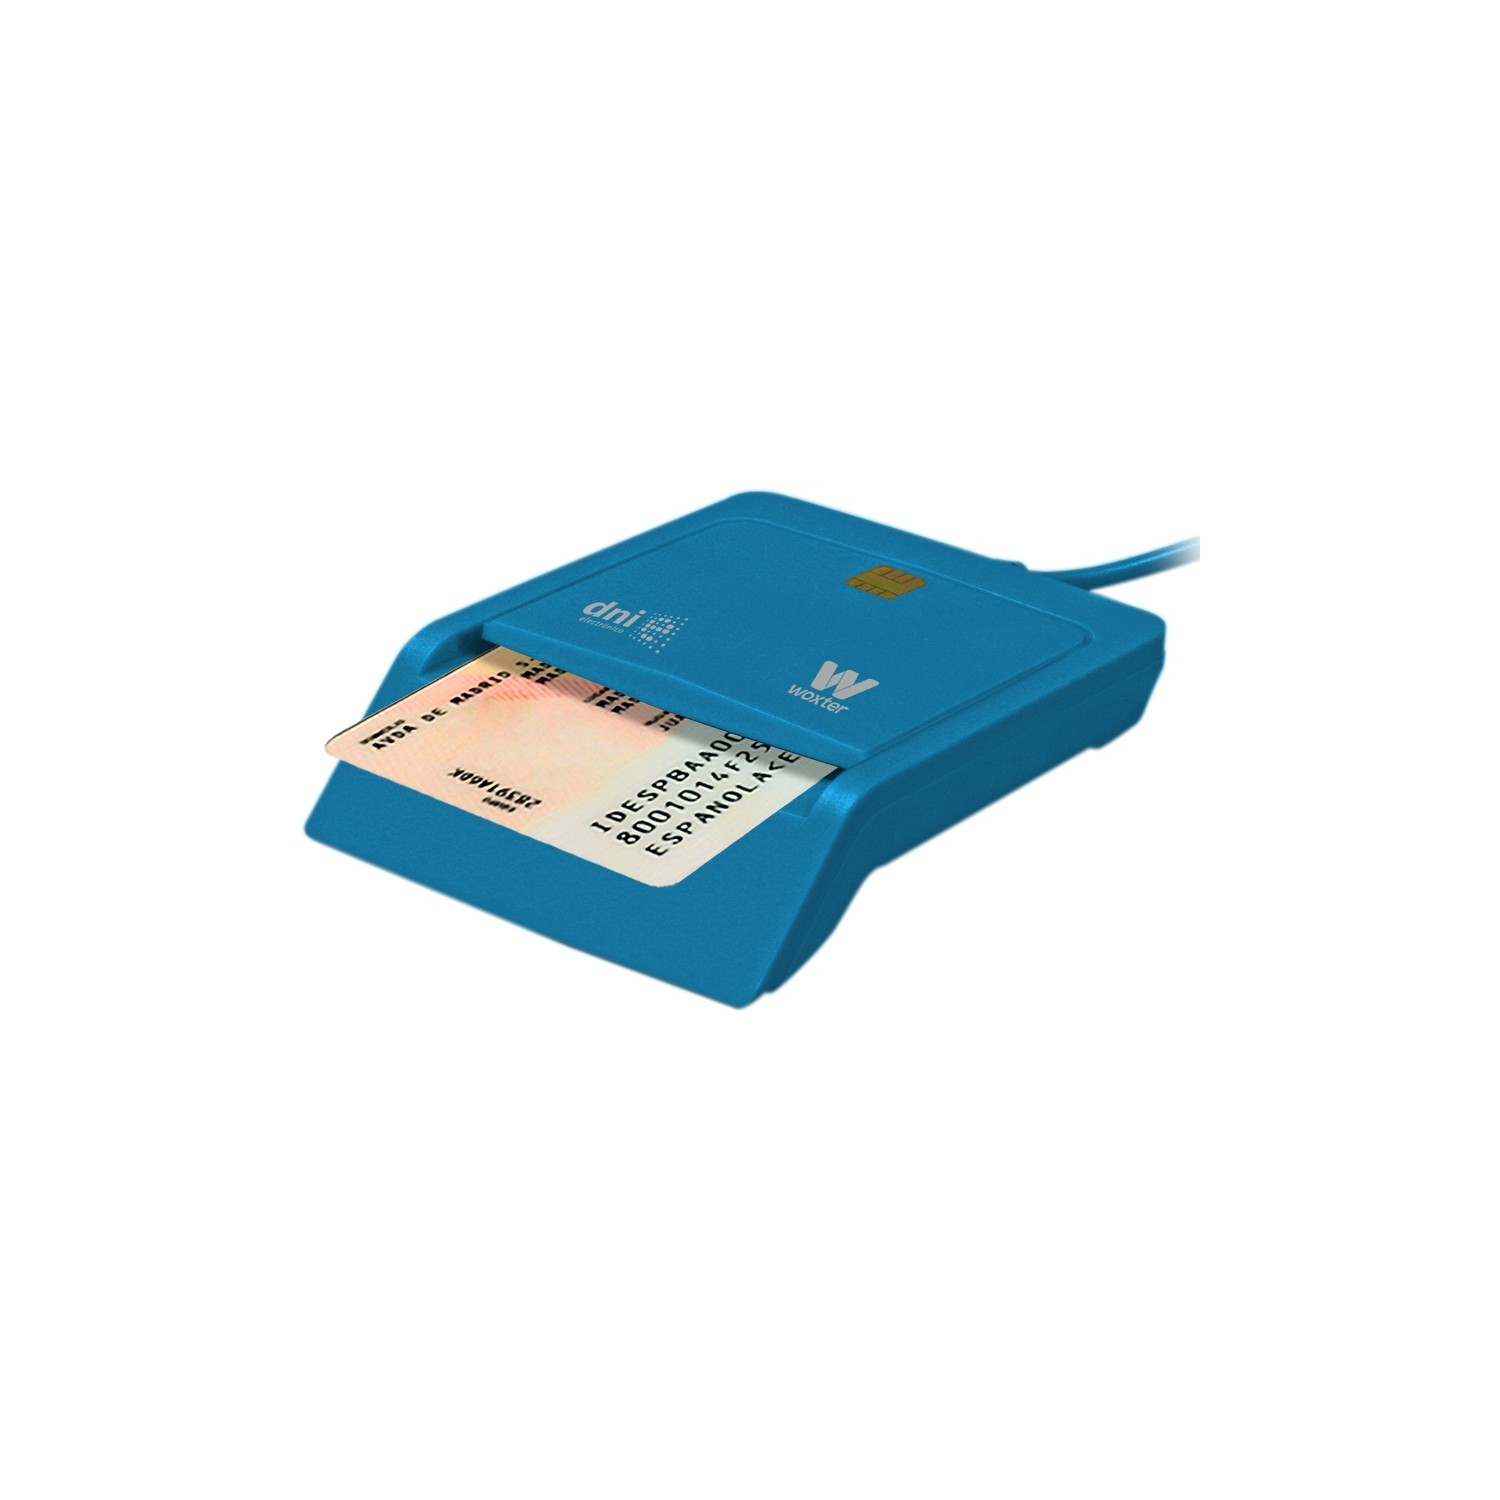 Lector de dni/tarjetas inteligentes woxter blanco - compatible con dnie/dni  3.0 y smartcards - usb 2.0 